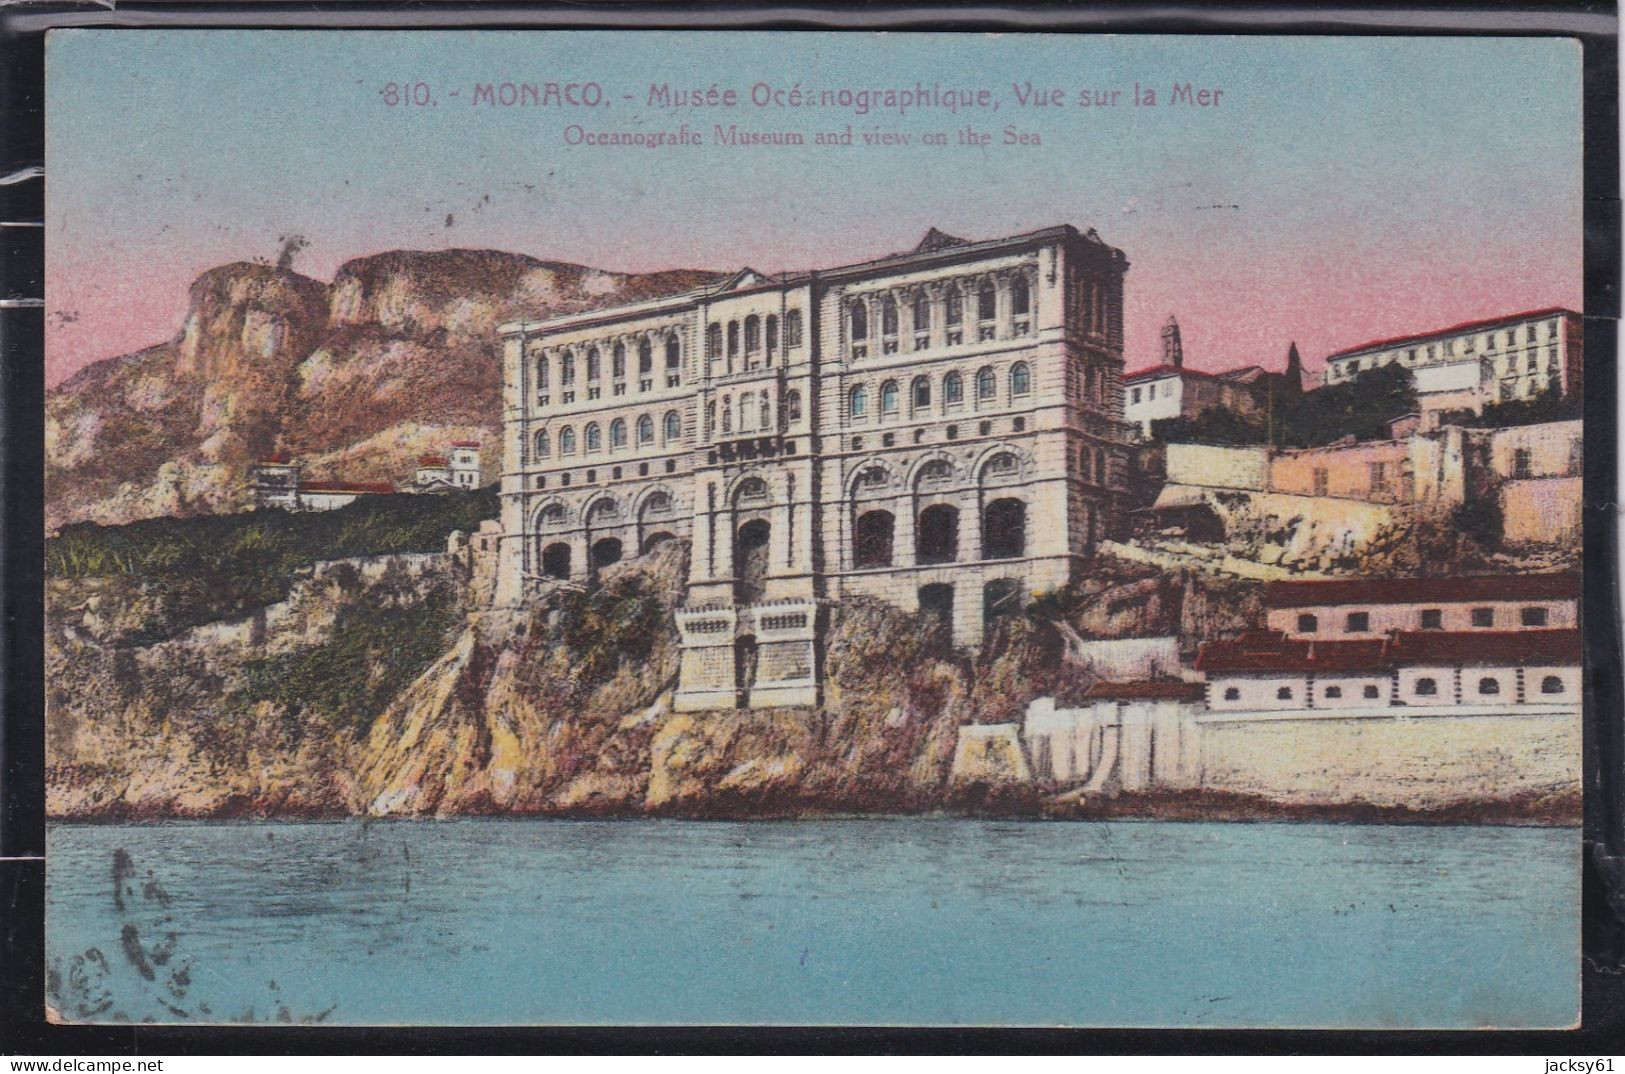 Monaco - Musée Océanographique, Vue Sur La Mer - Oceanographic Museum